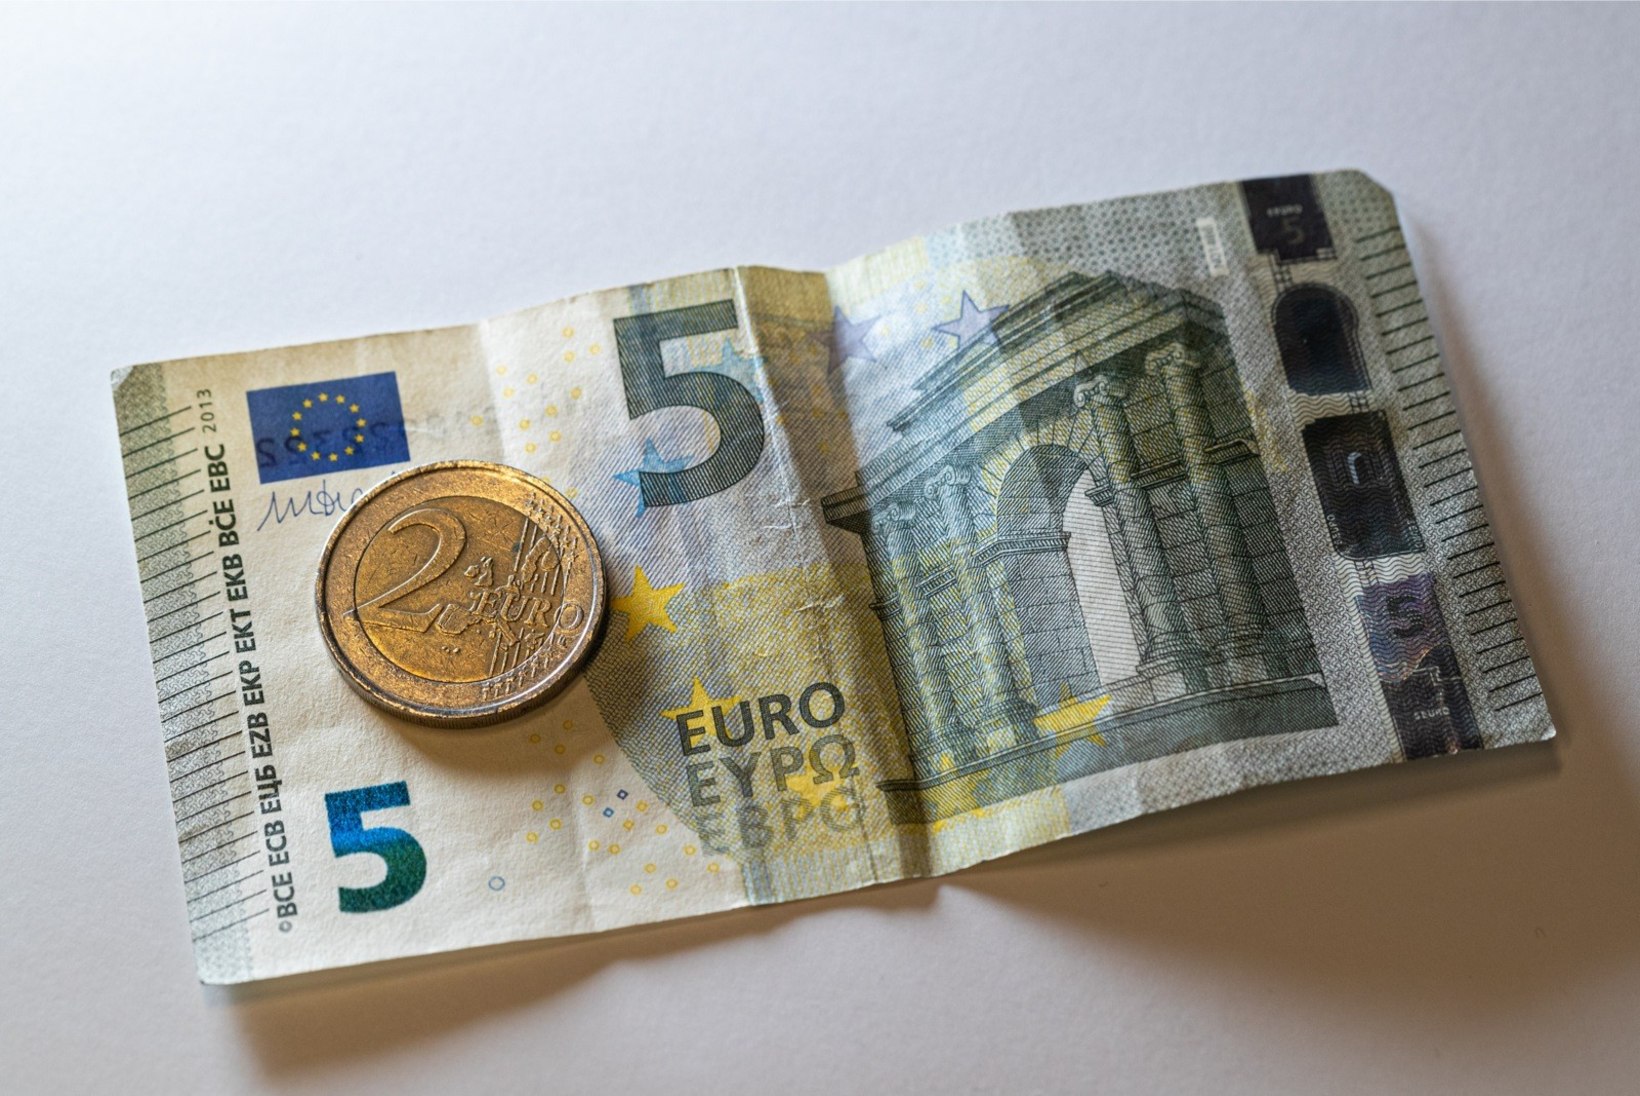 PENSIONÄRID, TÄHELEPANU! Mida saab erakorralise pensionitõusu ehk seitsme euro eest?